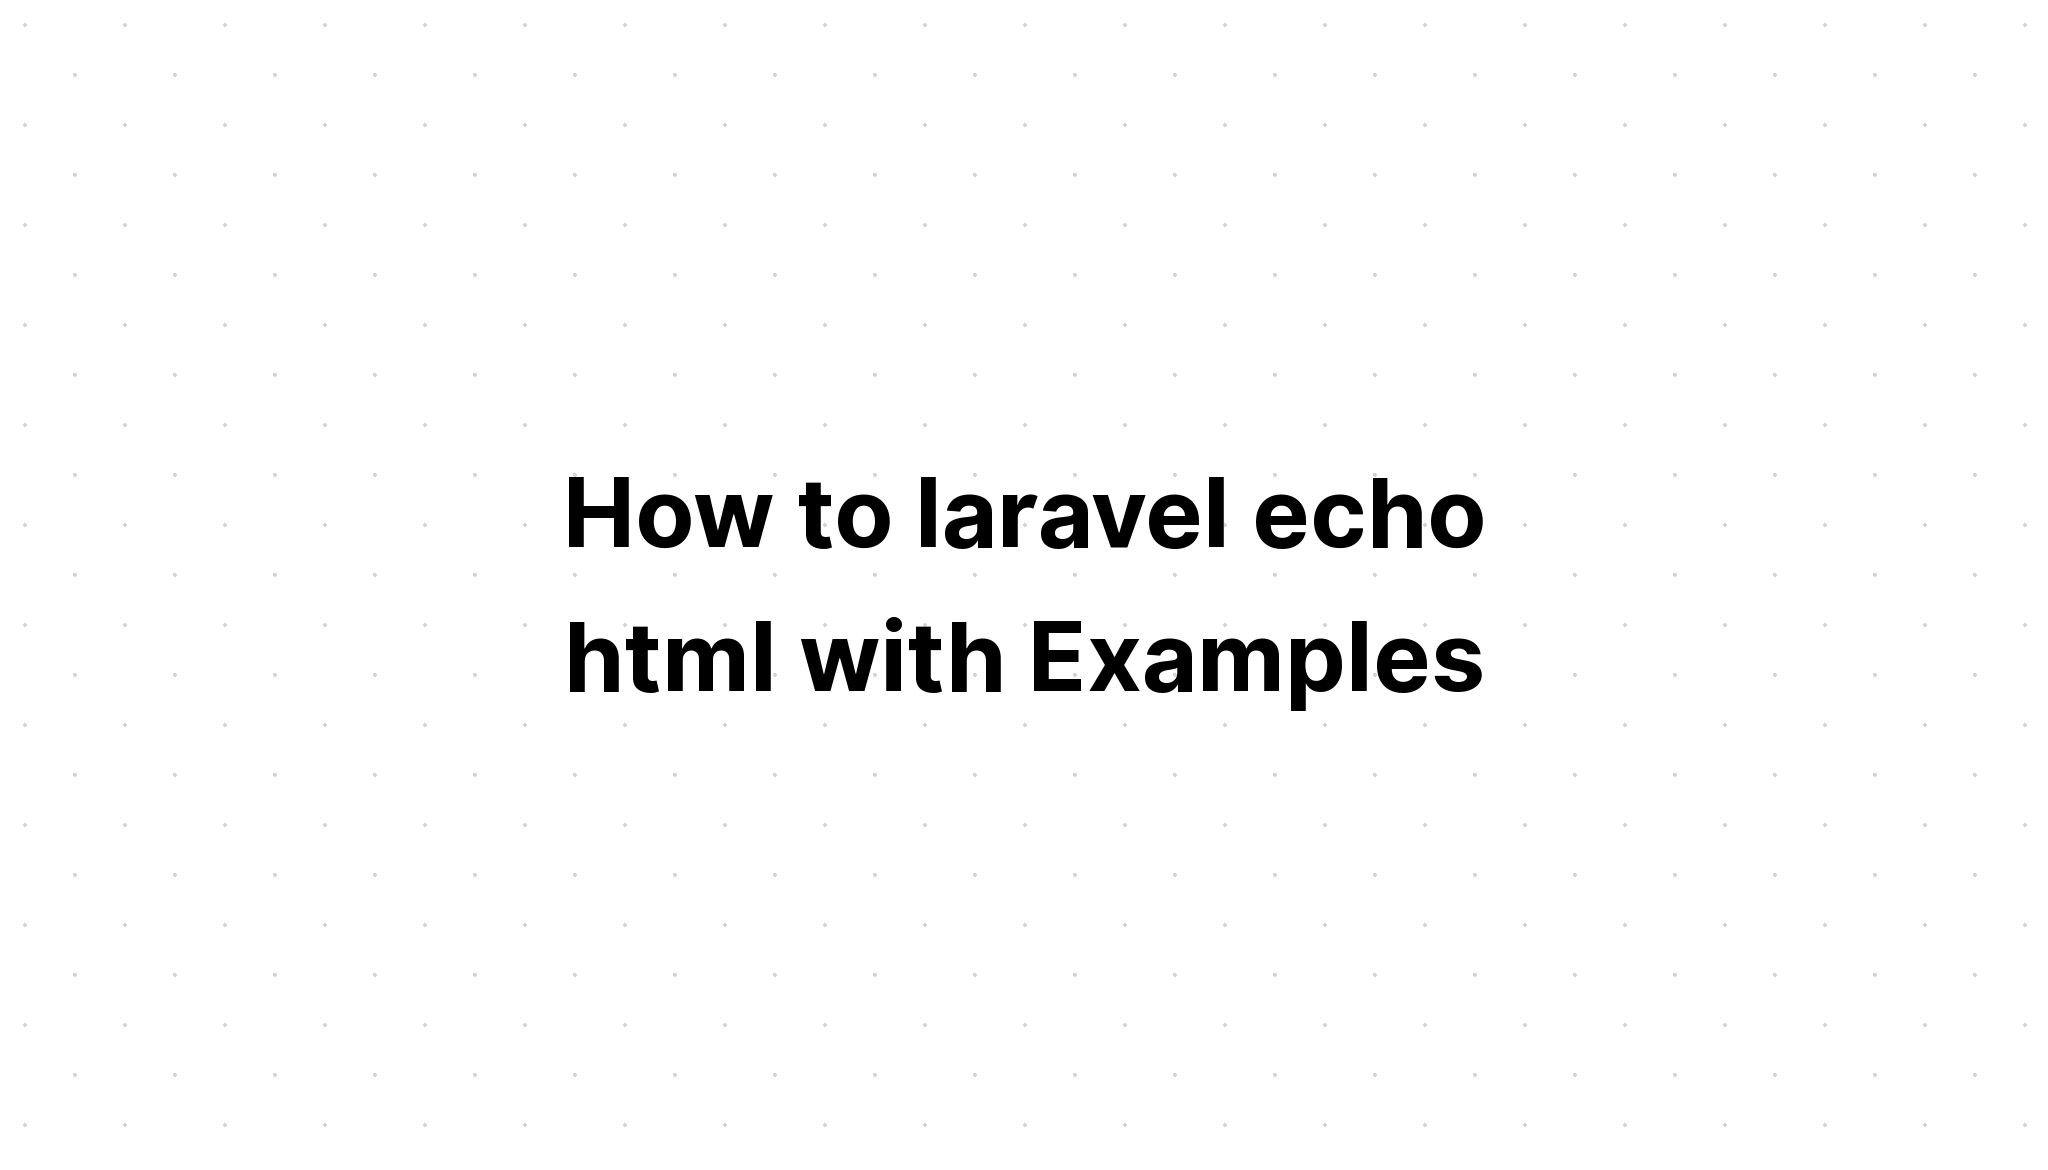 Cách sử dụng laravel echo html với các ví dụ